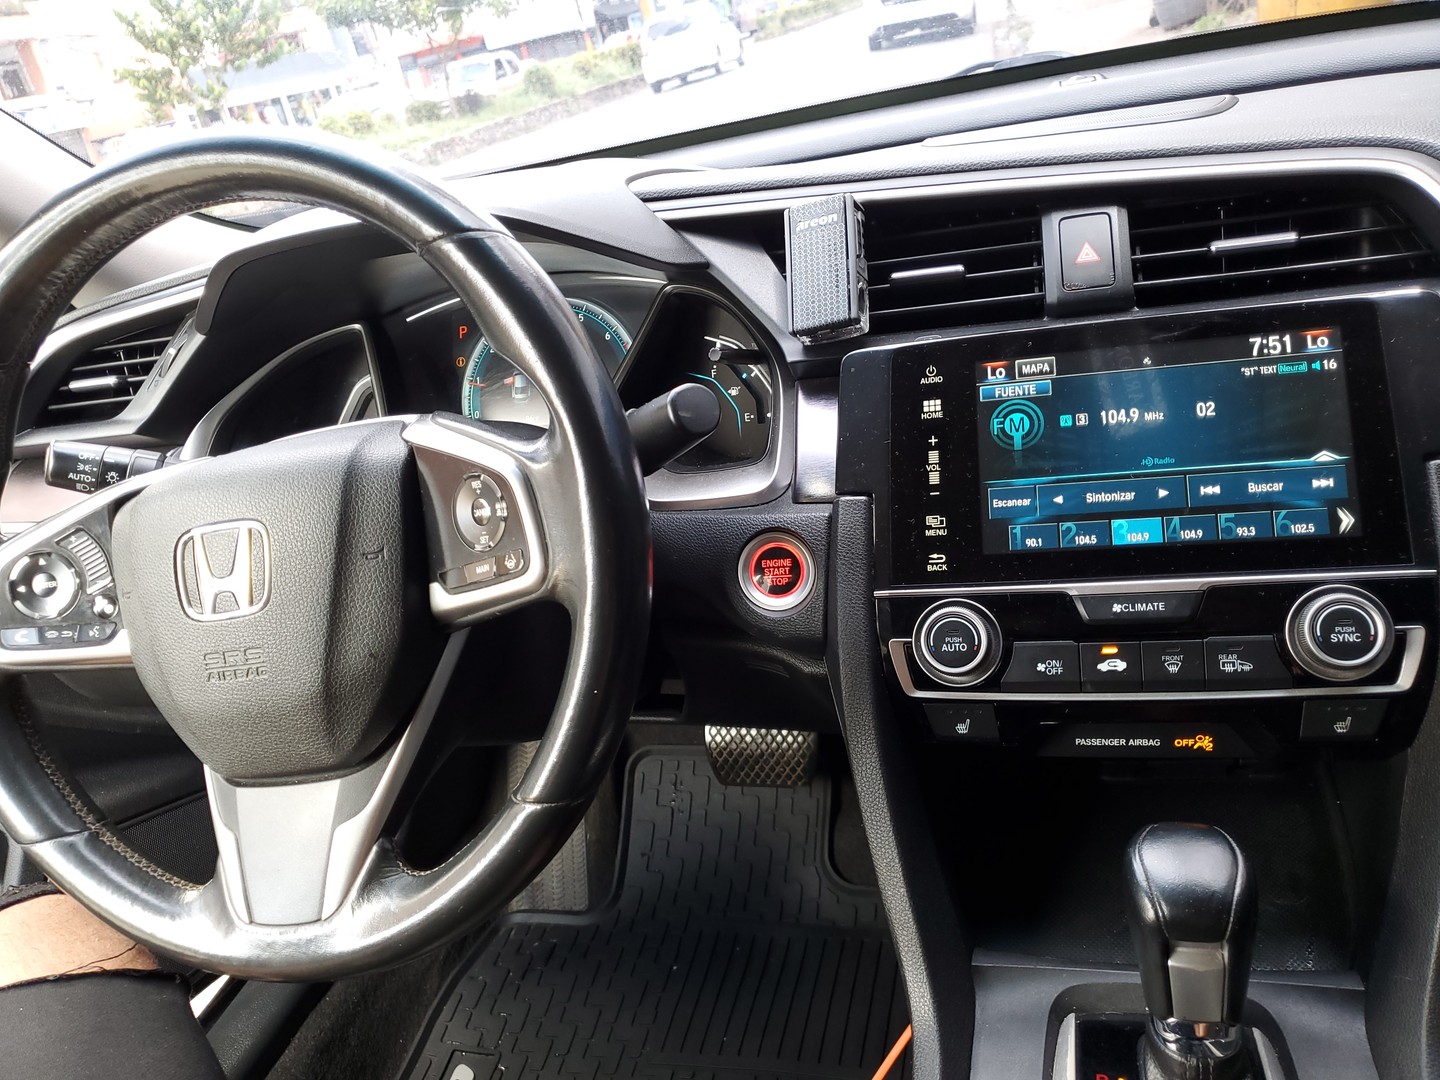 Honda Civic 2016 touring